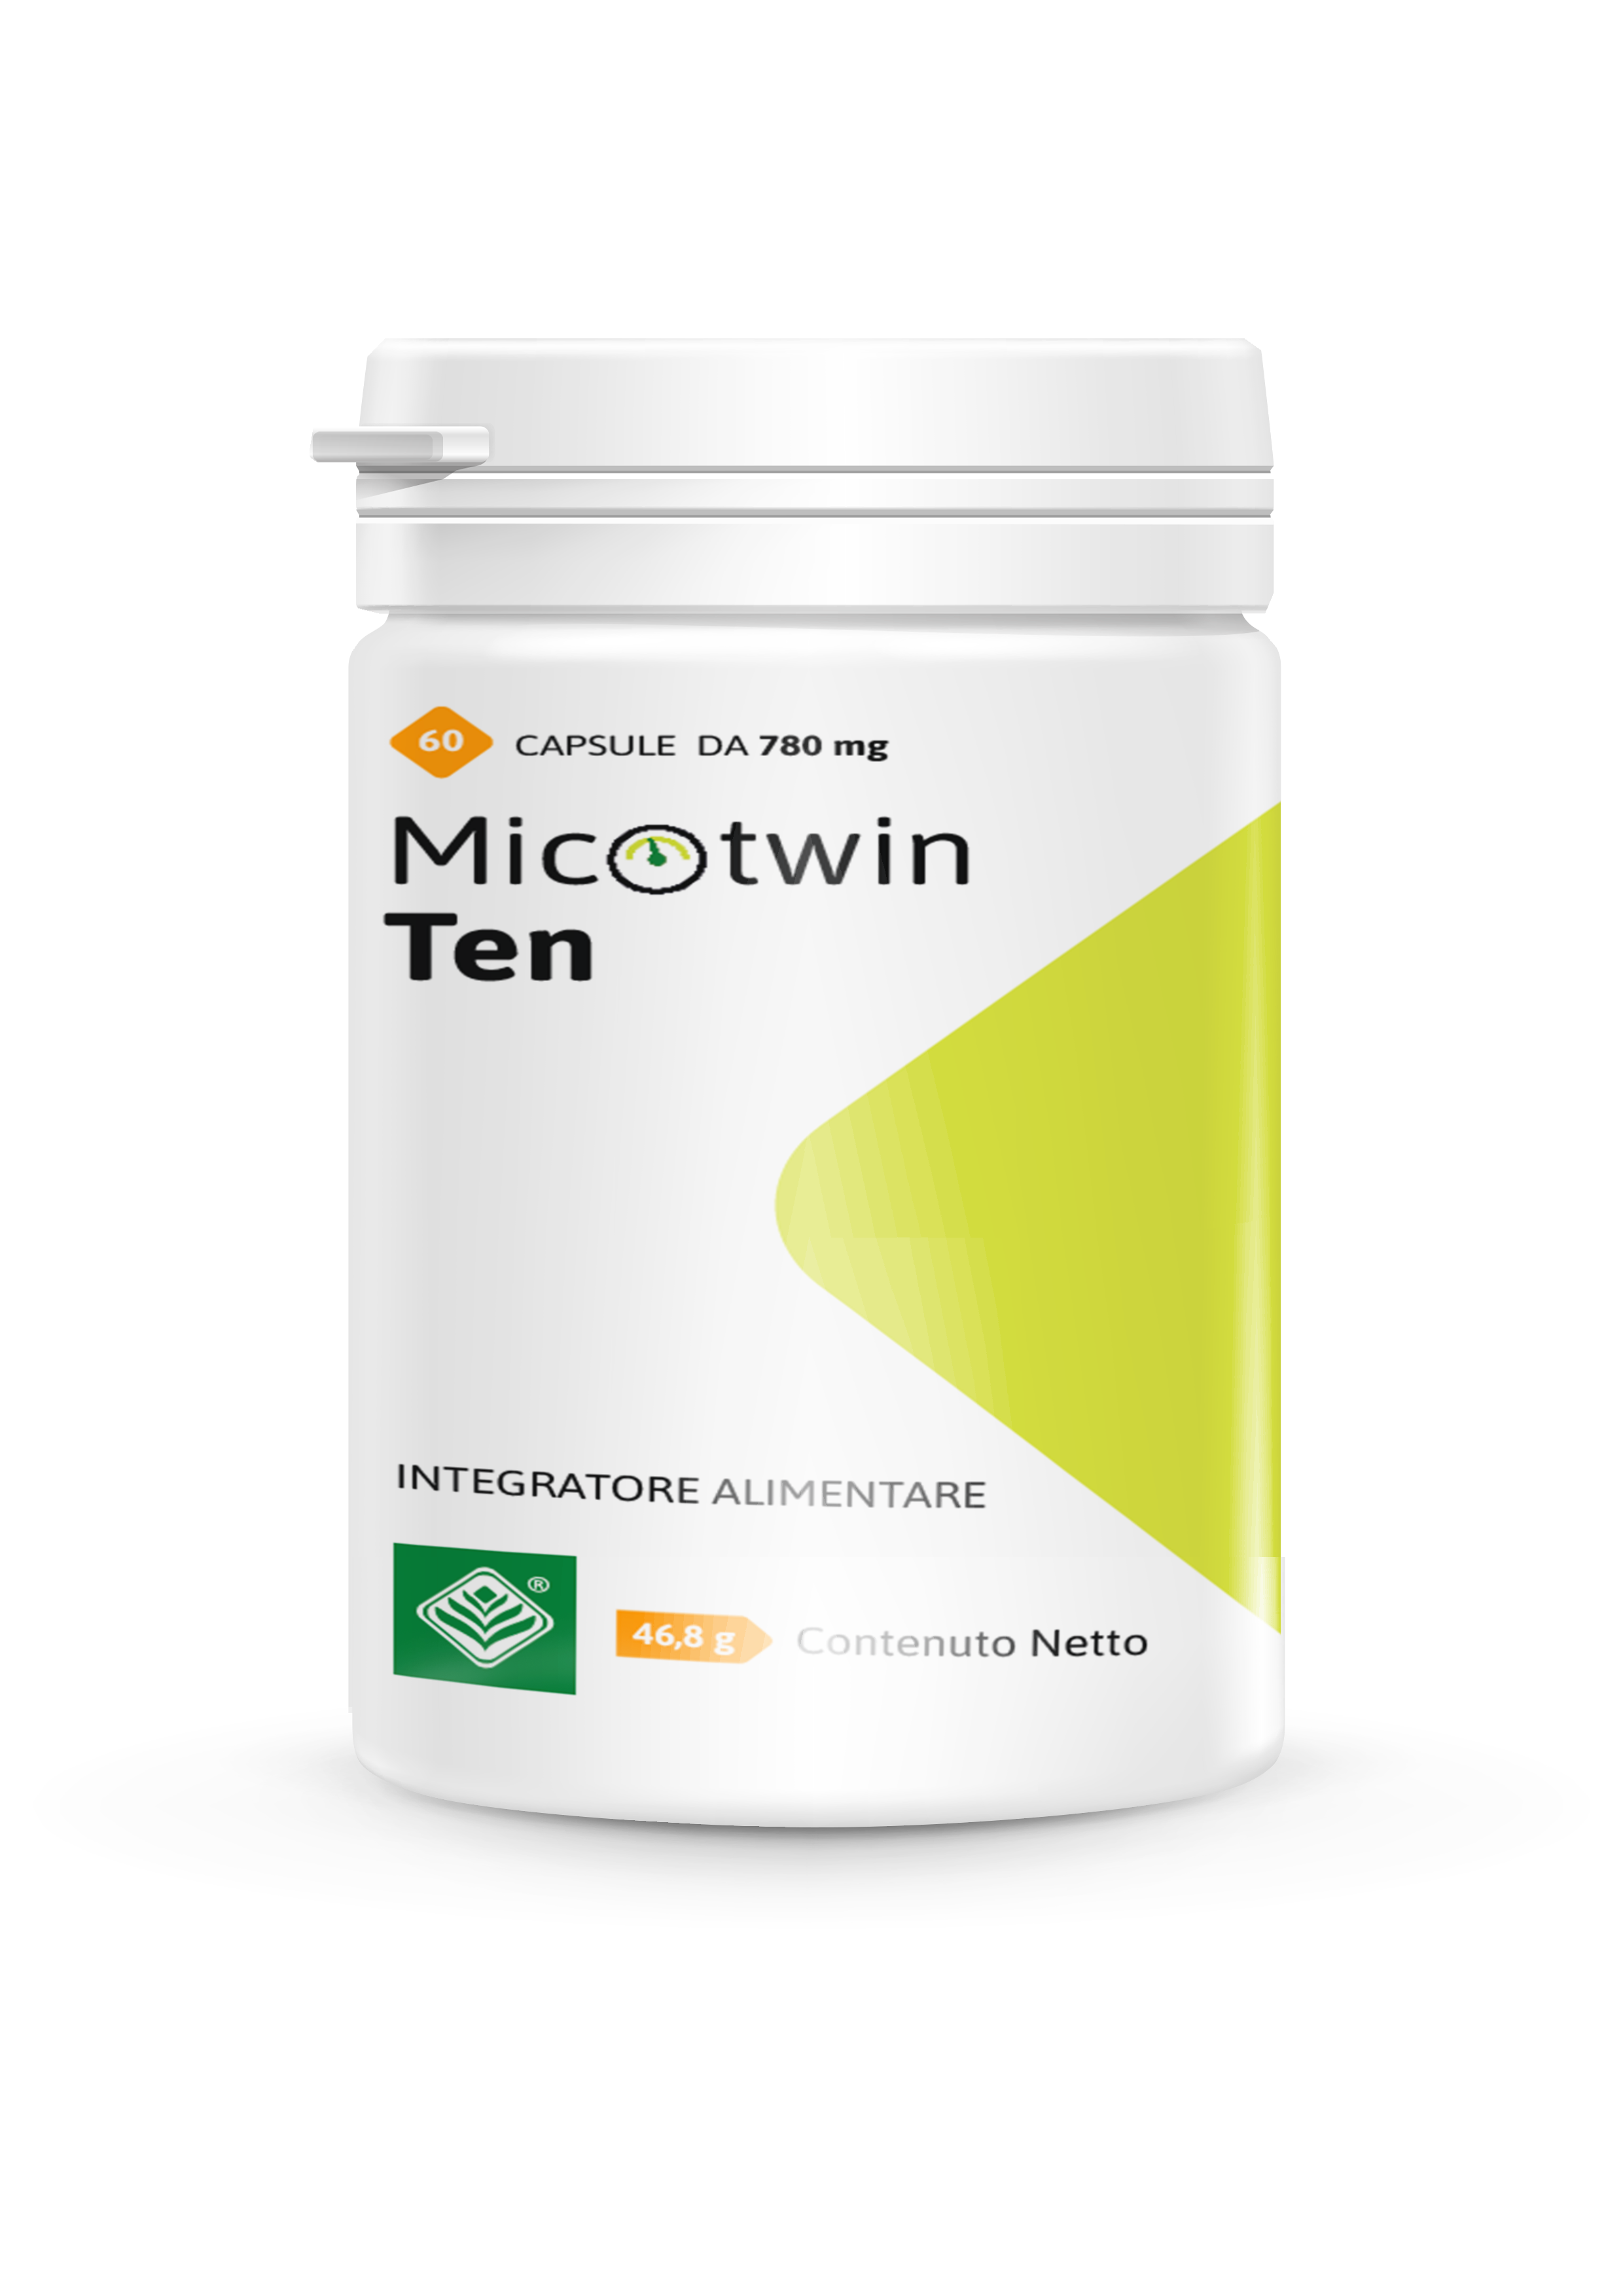 Micotwin Ten